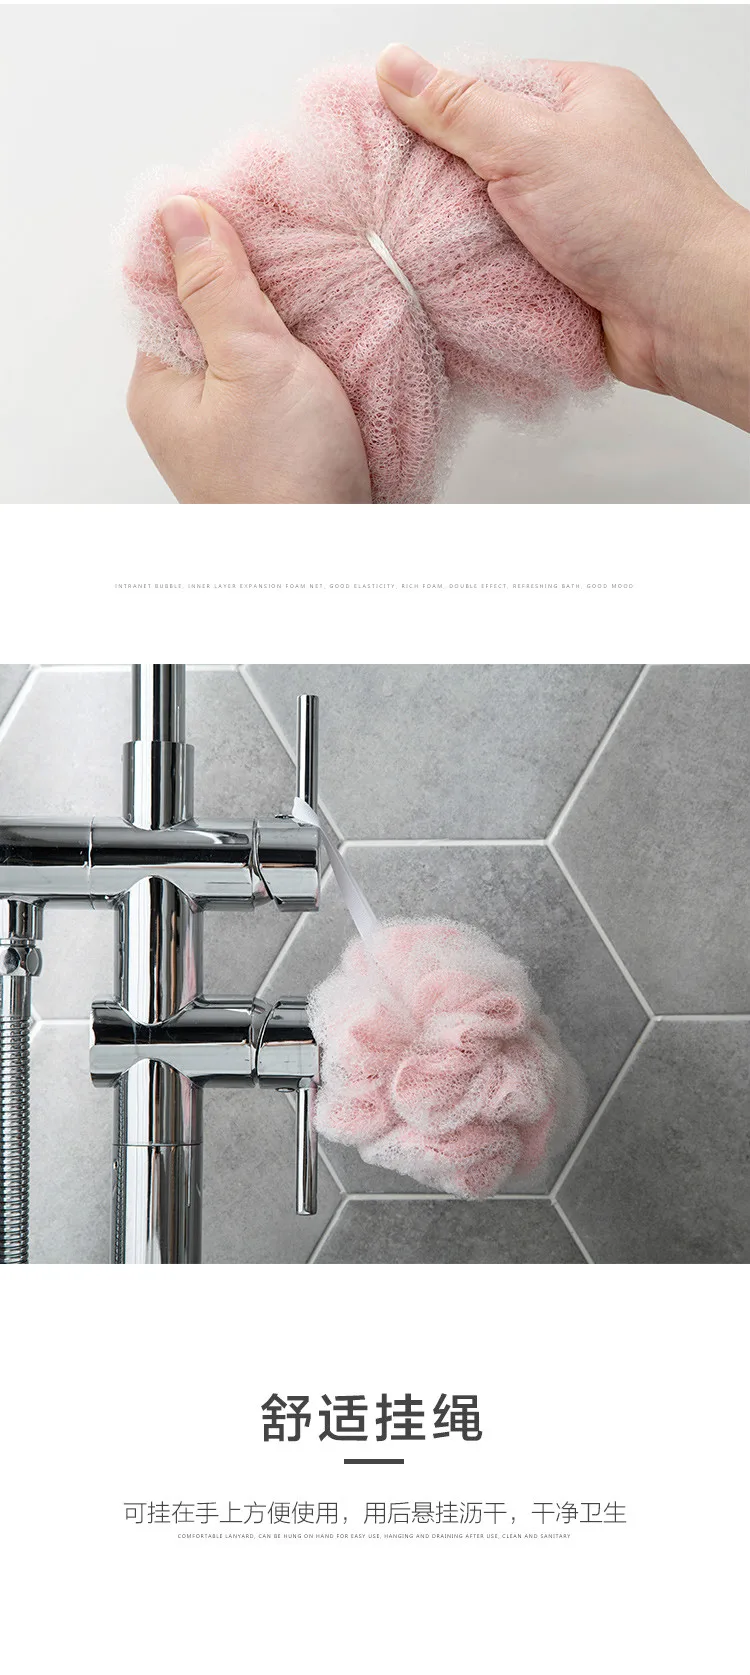 Новые красочные пузыри мяч для ванной предпочтительный материал удобный сенсорный Bast Wisp Эффективная очистка от загрязнения щетка для тела